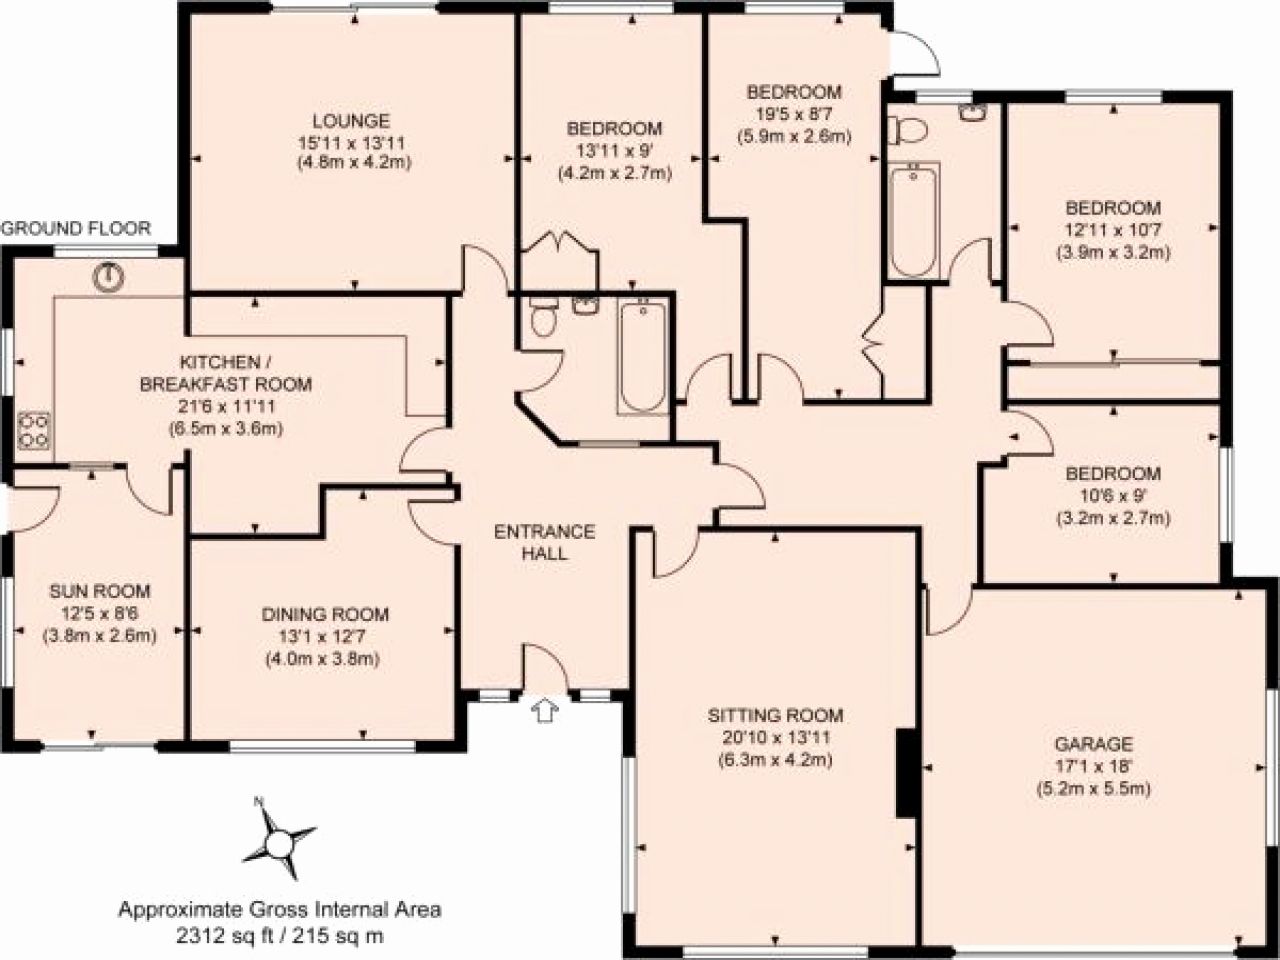 Floor Plans for 4 Bedroom Houses Bungalow floor plans